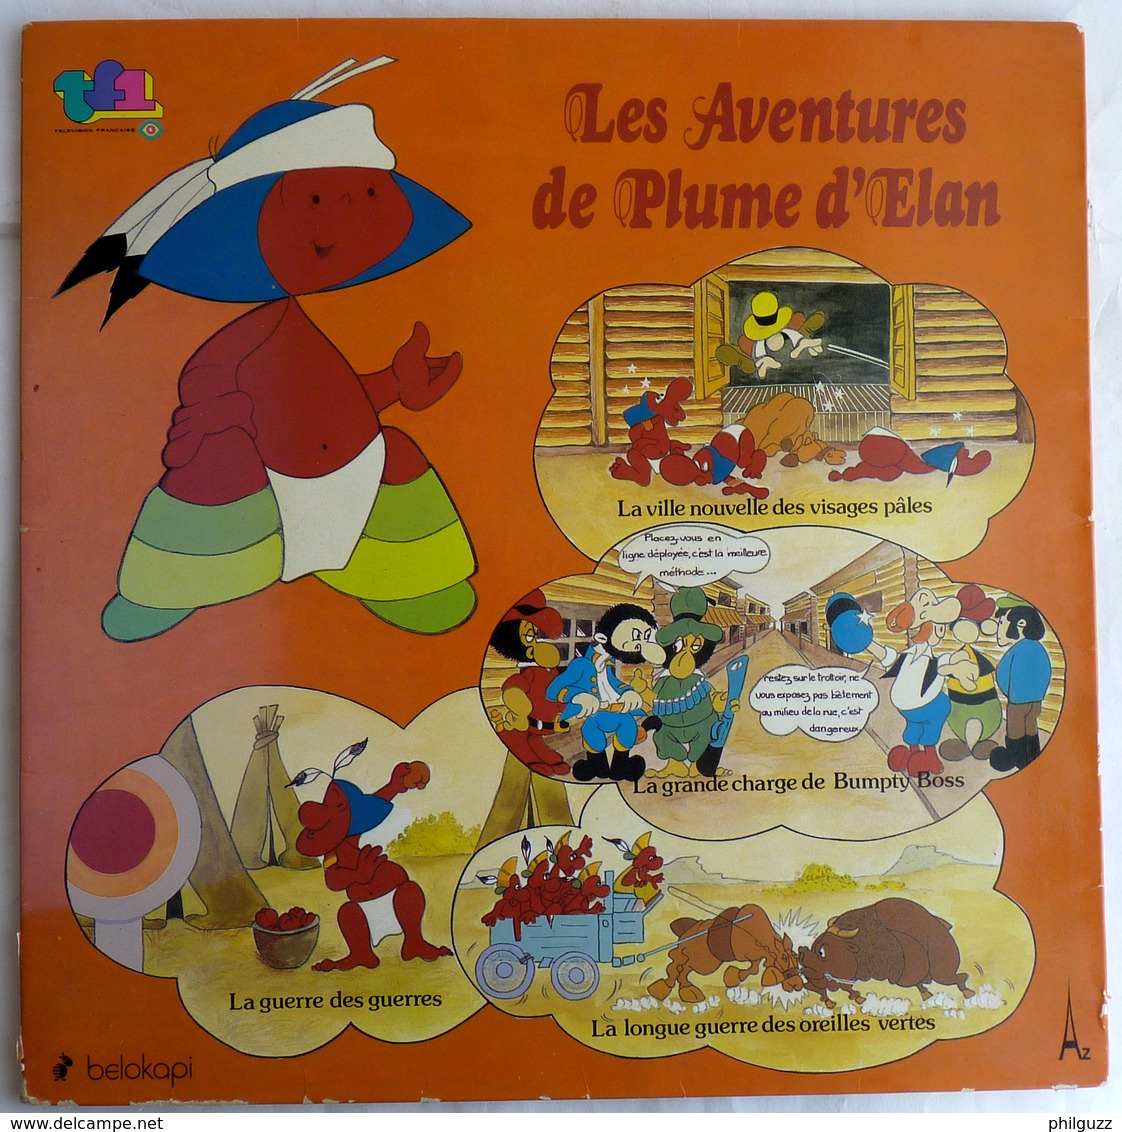 LIVRE DISQUE 33T LES AVENTURES DE PLUME D'ELAN 14501 1979 - Records